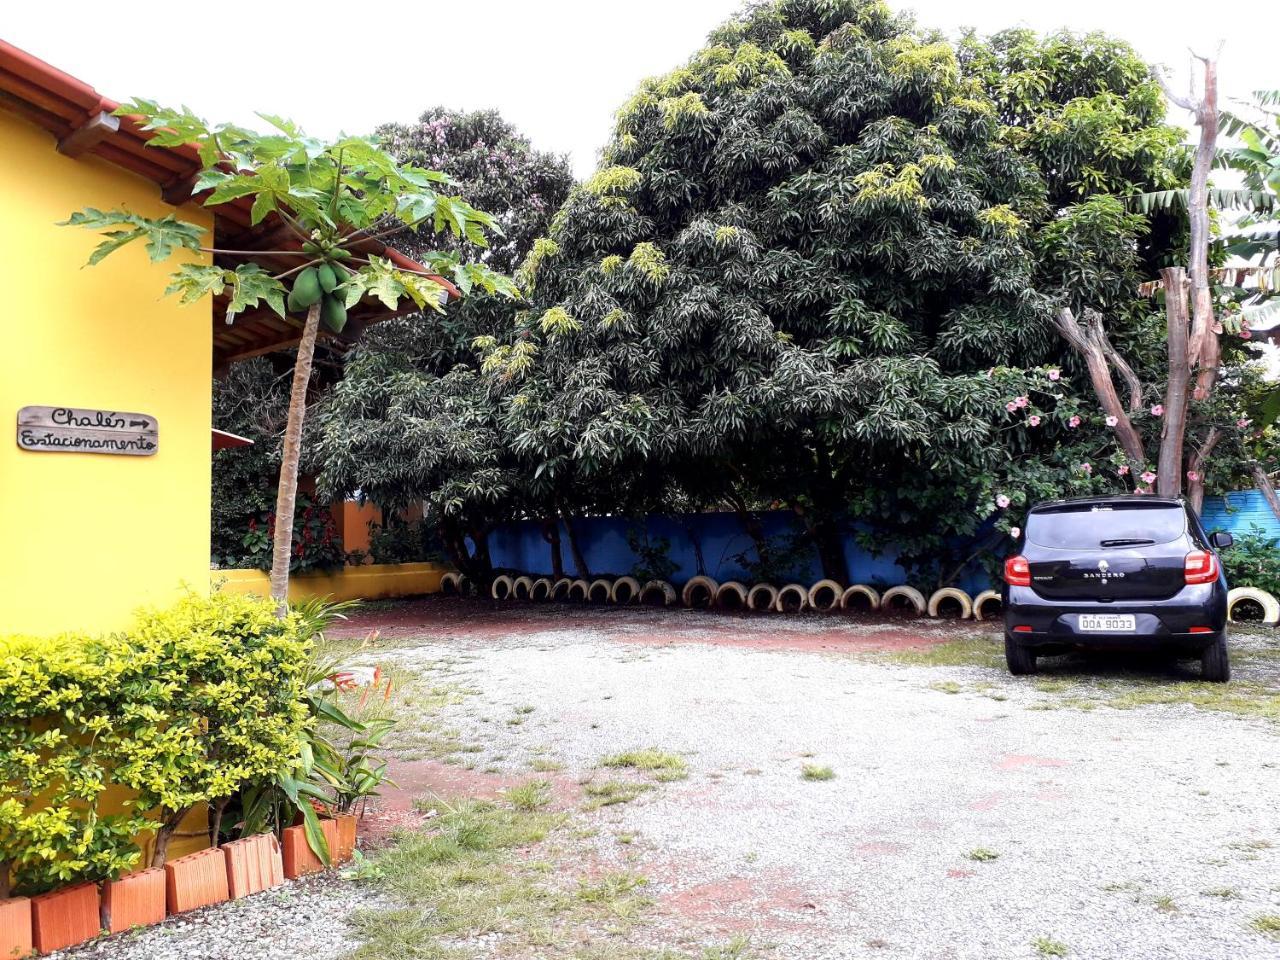 Pousada Casa Do Cerrado - Alto Paraíso de Goiás 外观 照片